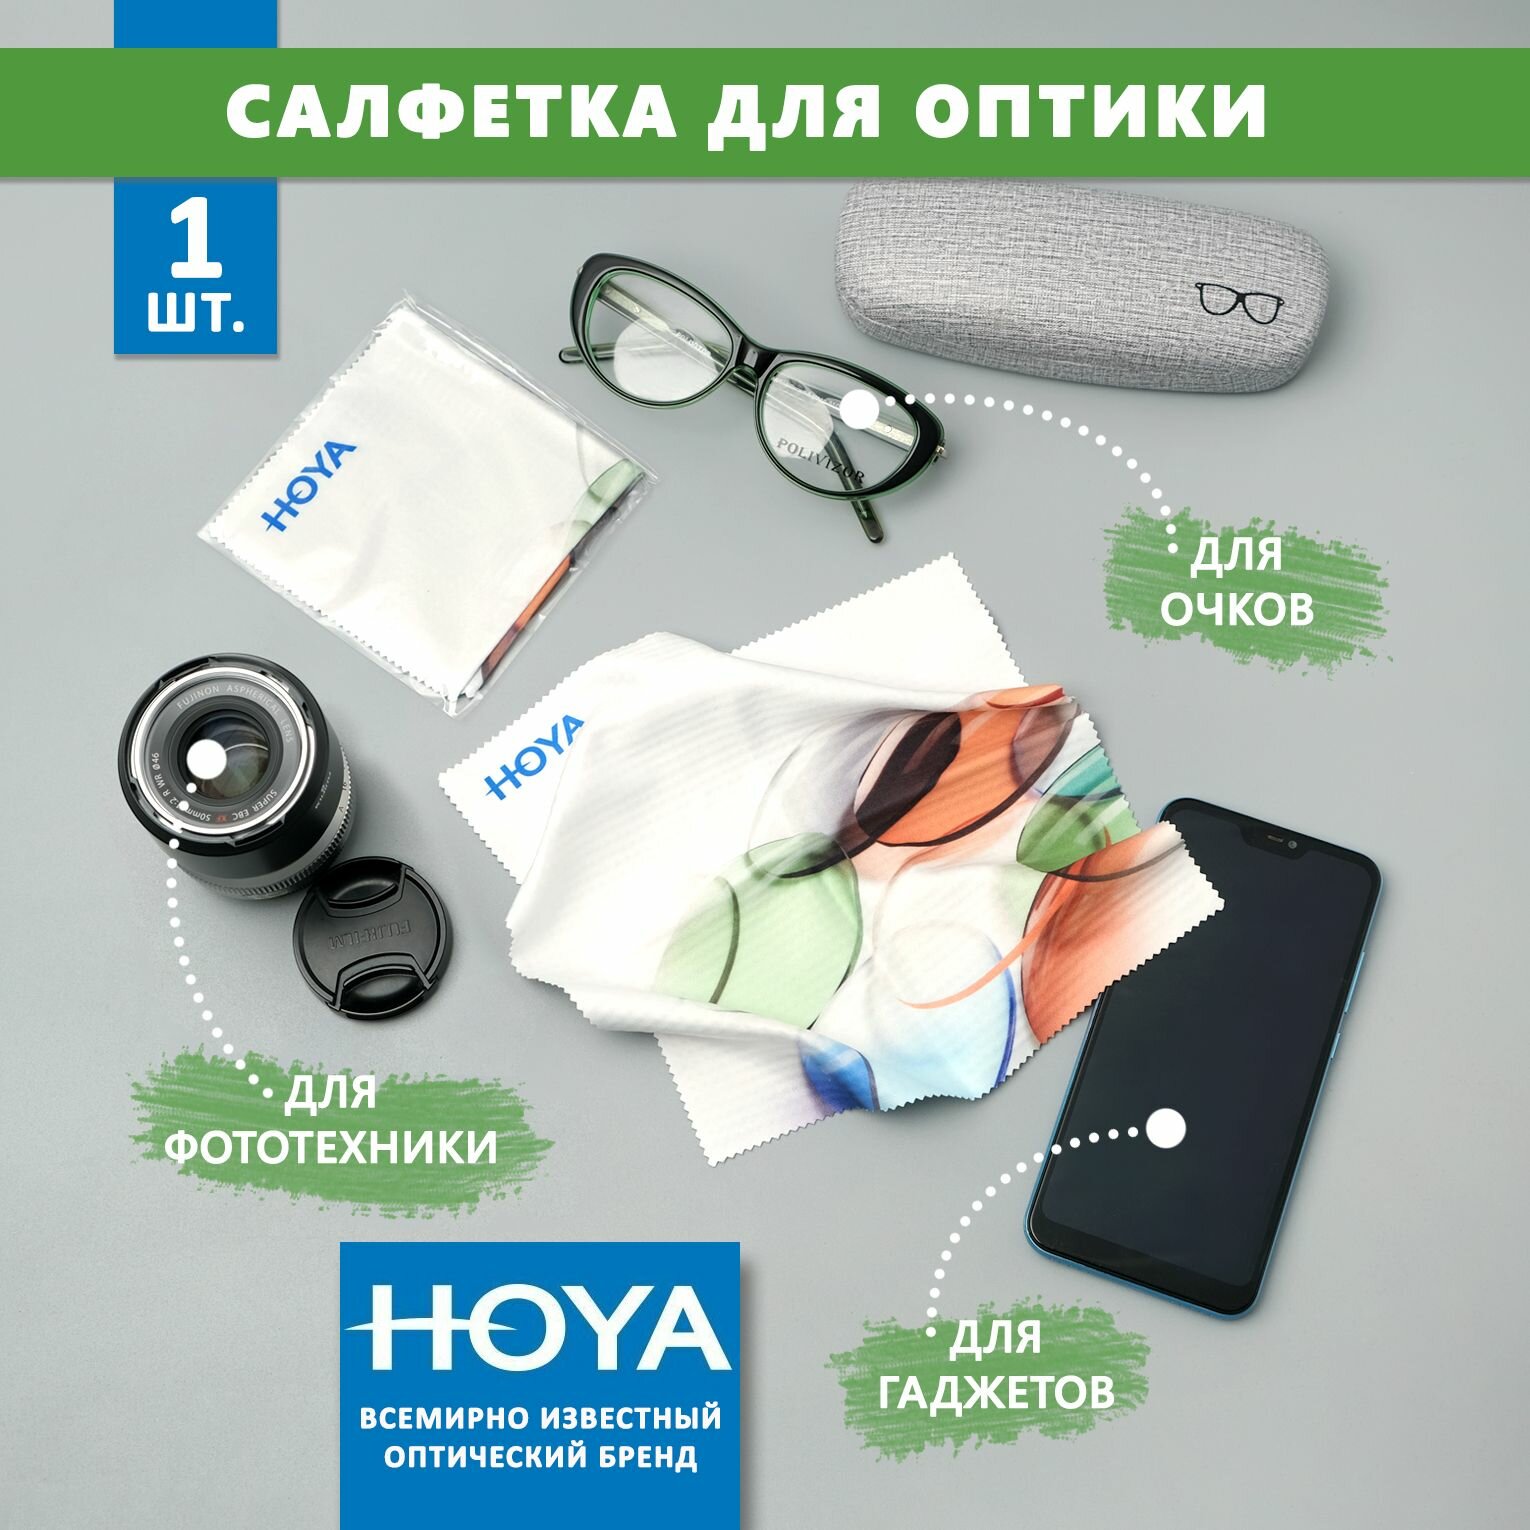 Большая фирменная салфетка Hoya для протирки очков, уходом за сотовыми телефонами электронными гаджетами и объективами фотоаппаратов.